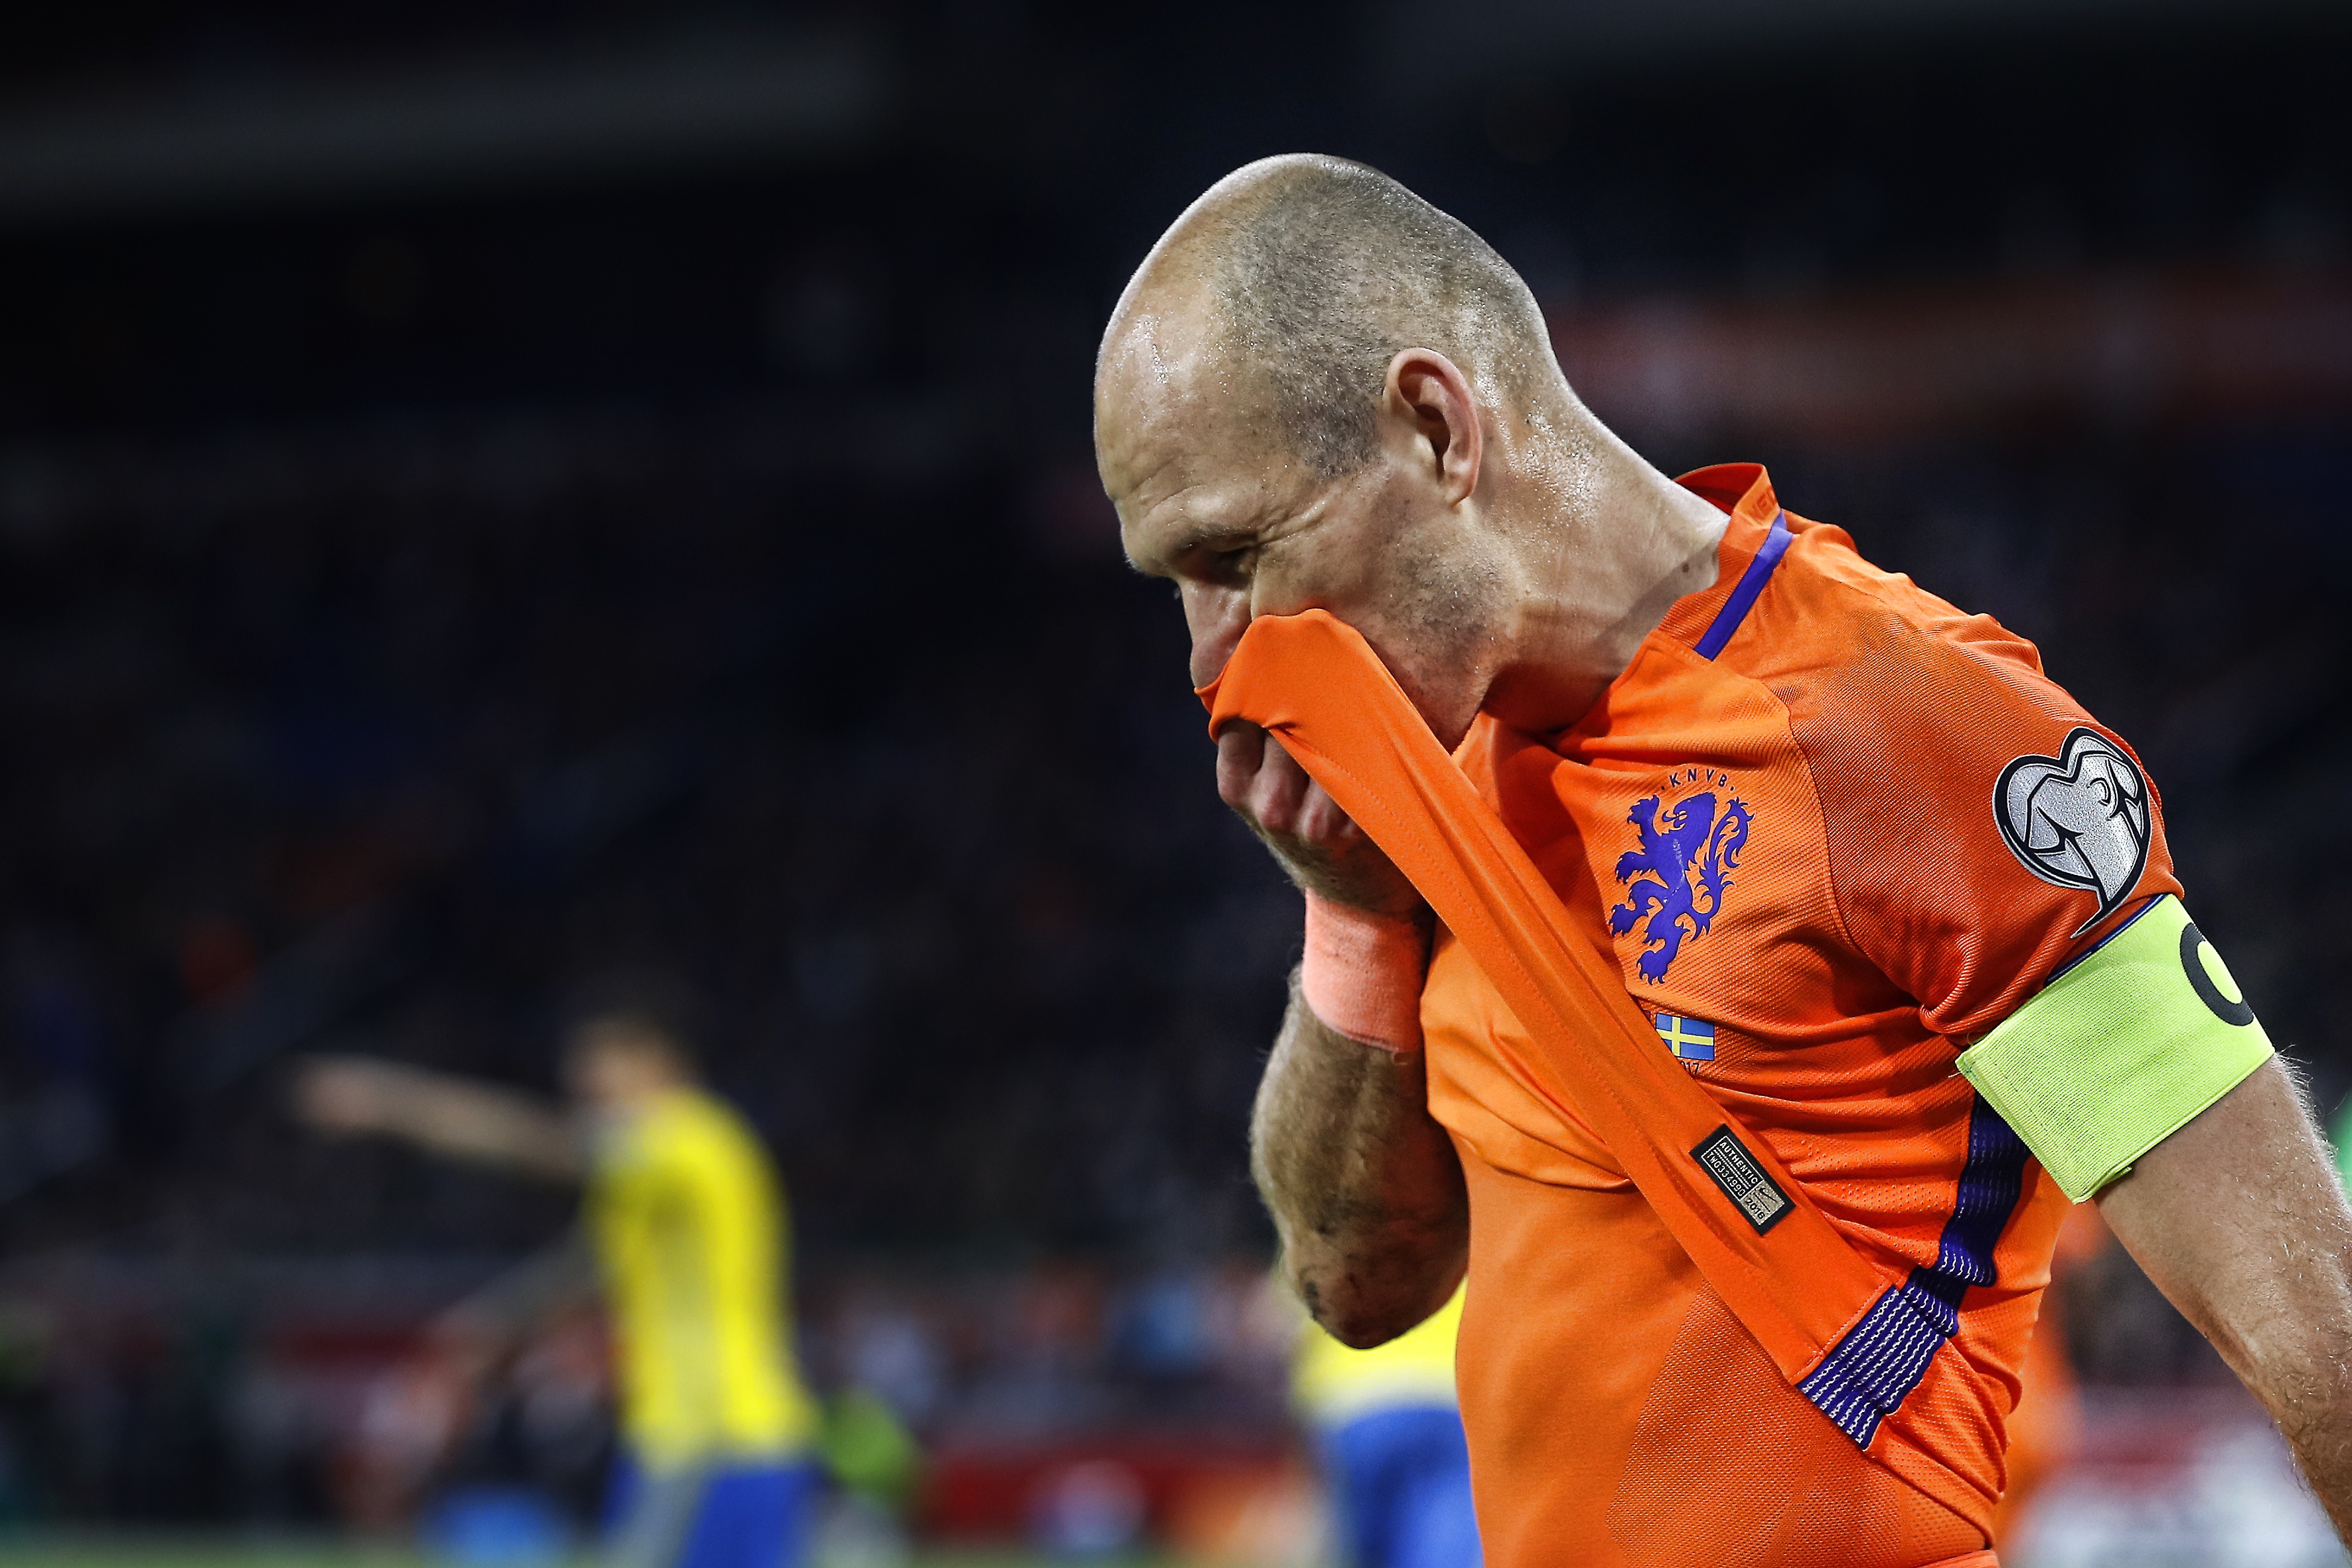 Sporten Slepen ontsnapping uit de gevangenis IKEA Duitsland' dolt Nederlandse voetbalfans met WK